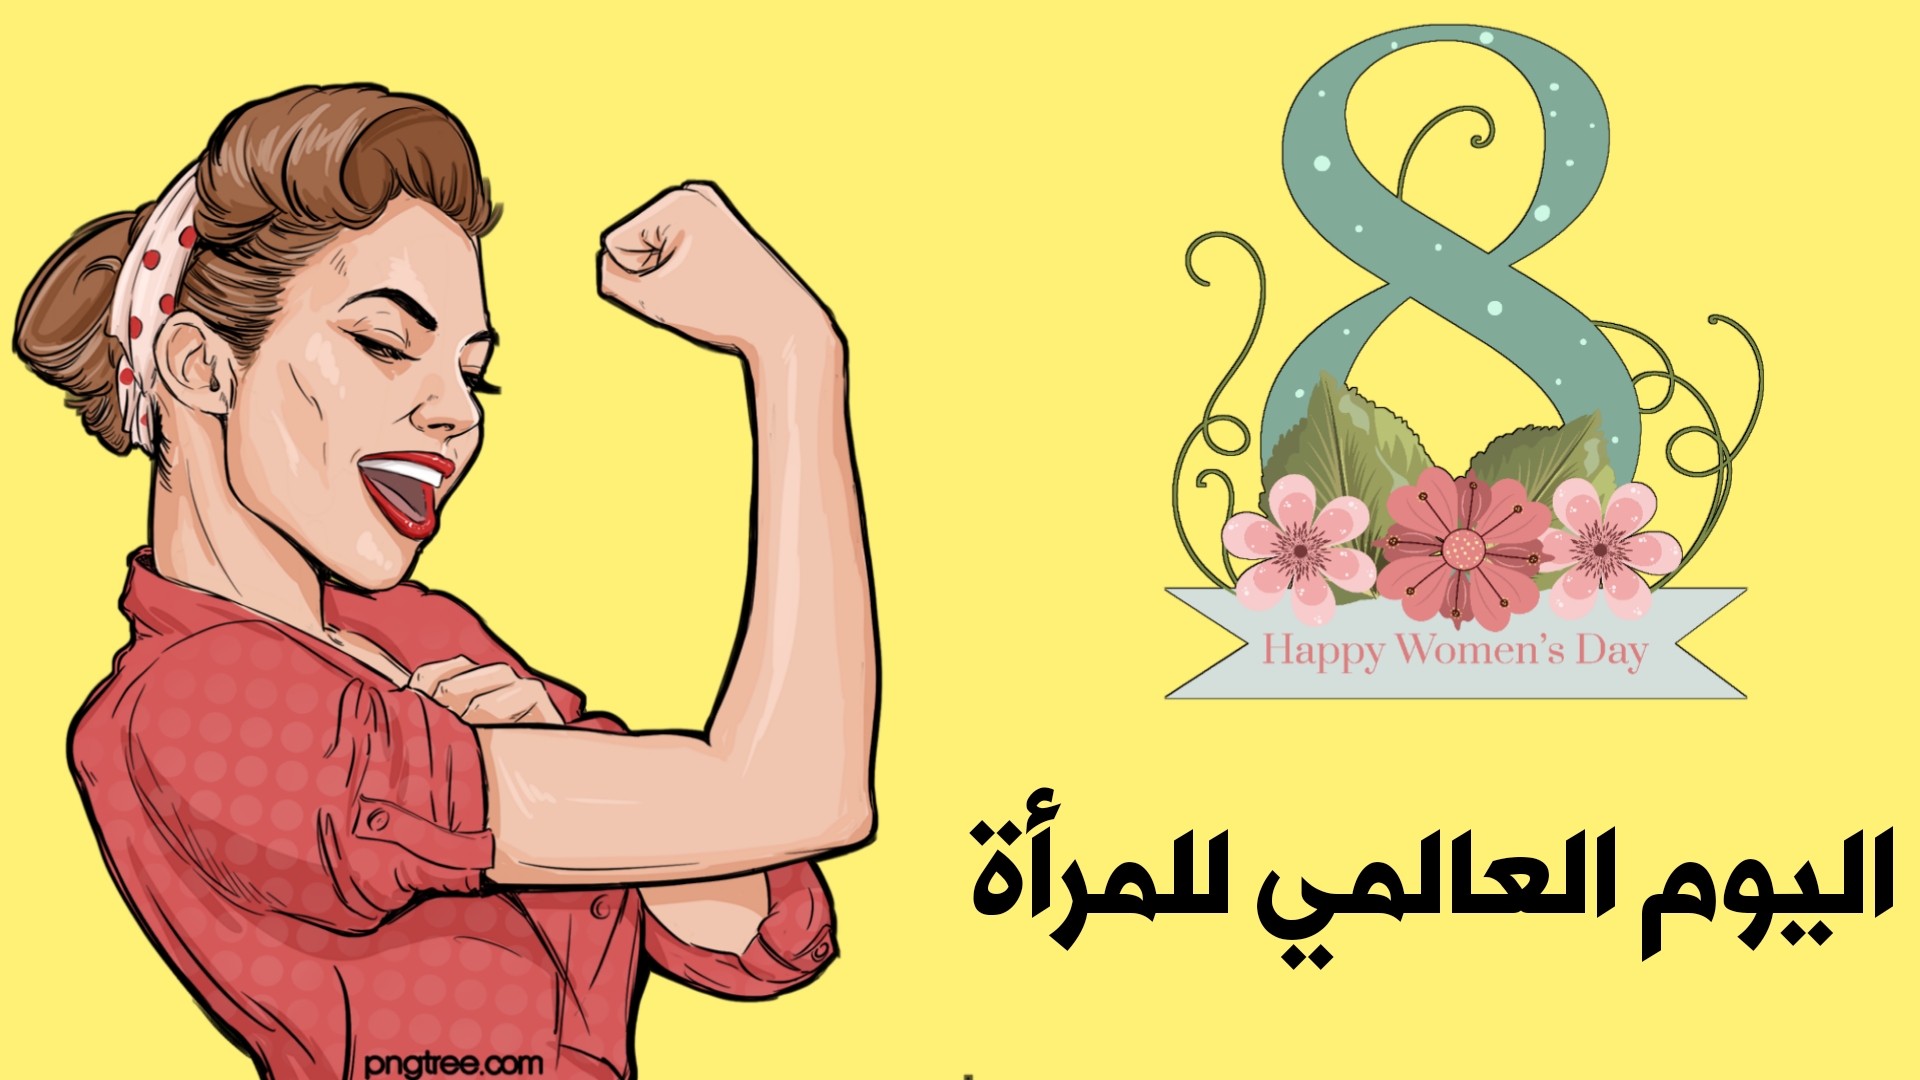 جهود تبذلها الدولة المصرية لتمكين المرأة اقتصاديا ولتأهيل القيادات النسائية